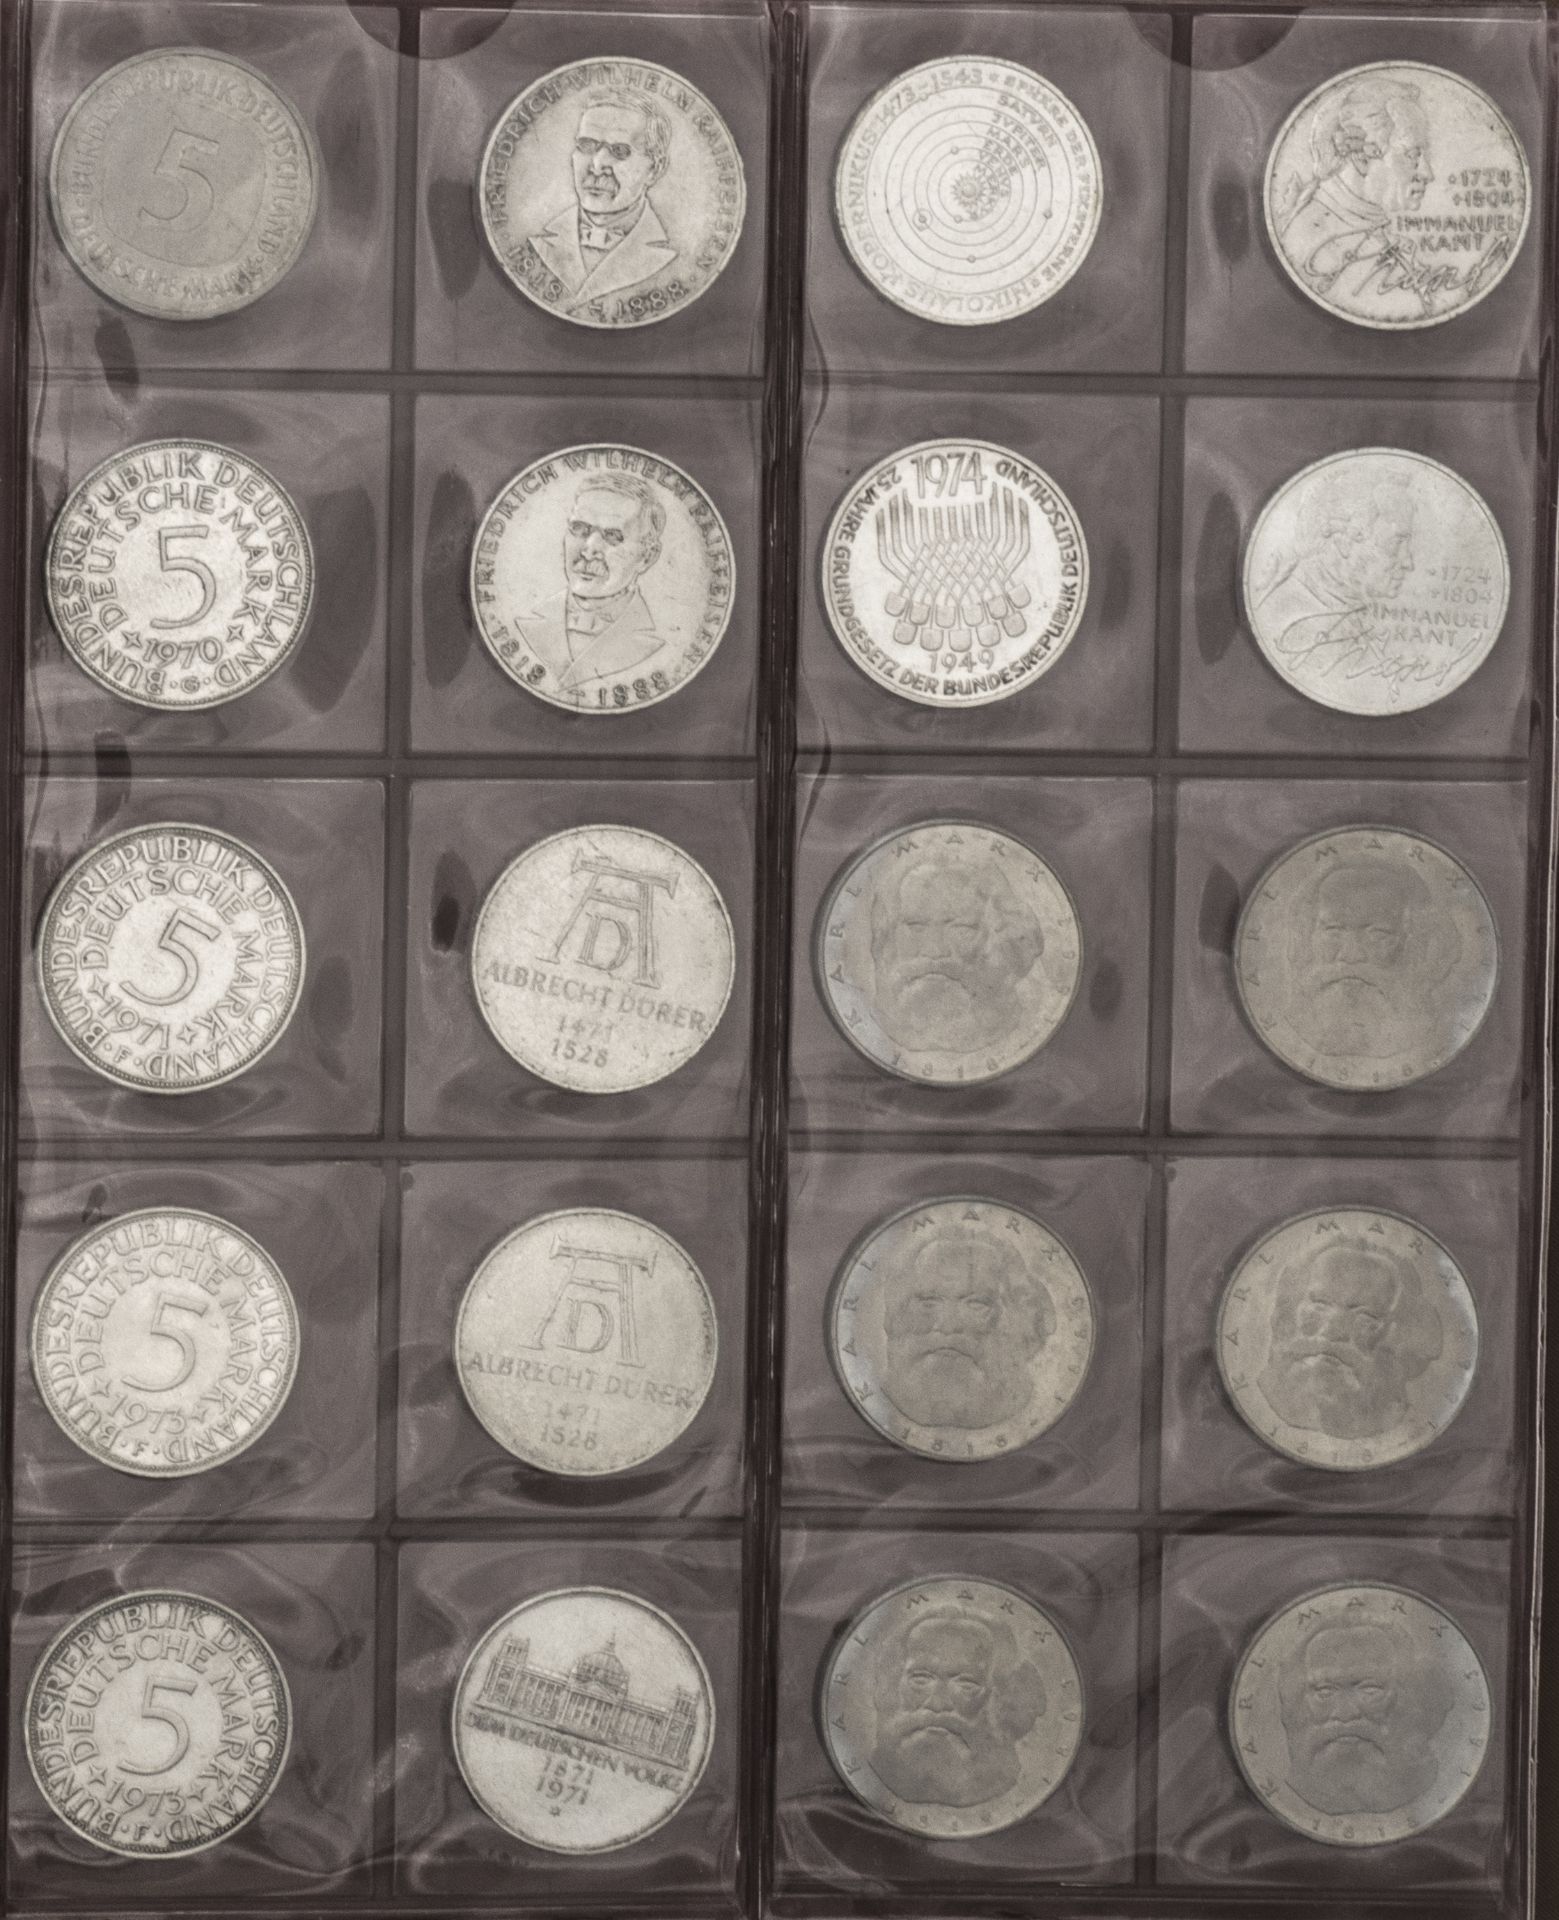 BRD, Sammlung aus 130 Stück 5.- DM - Münzen. Im Sammelalbum. - Image 4 of 7